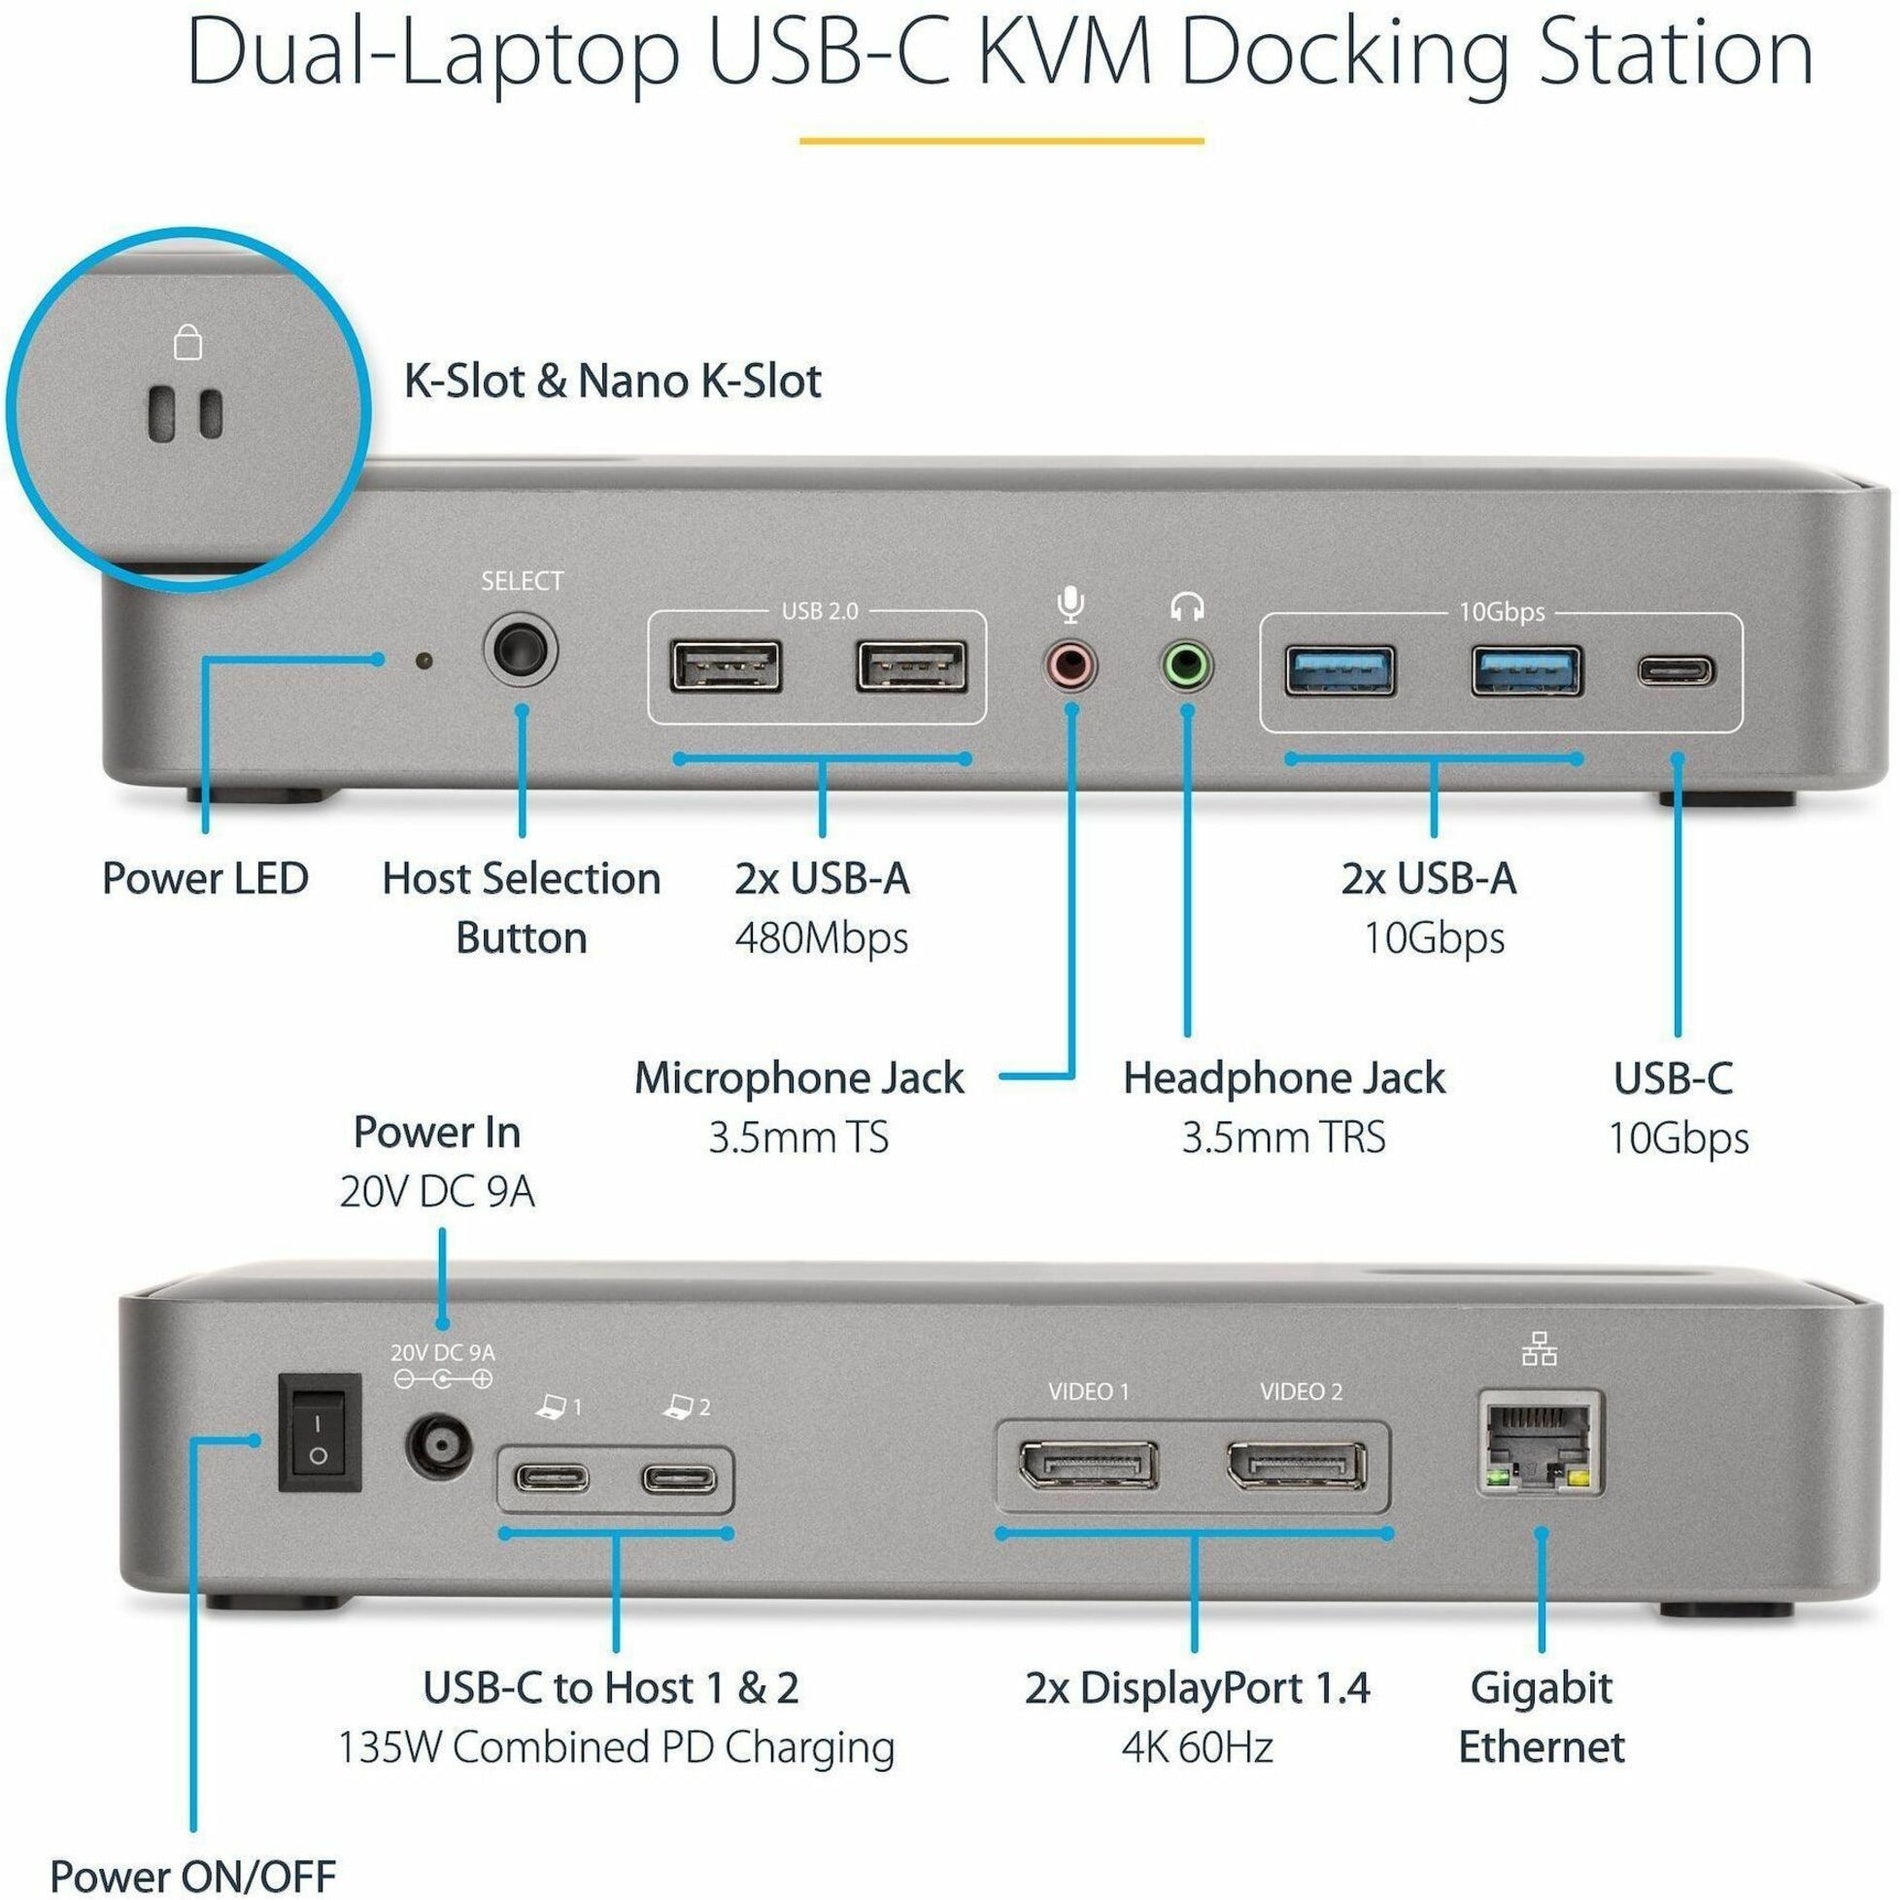 StarTech.com 129N-USBC-KVM-DOCK Docking Station, USB-C, 4K Display, 7 USB Ports, Gigabit Ethernet